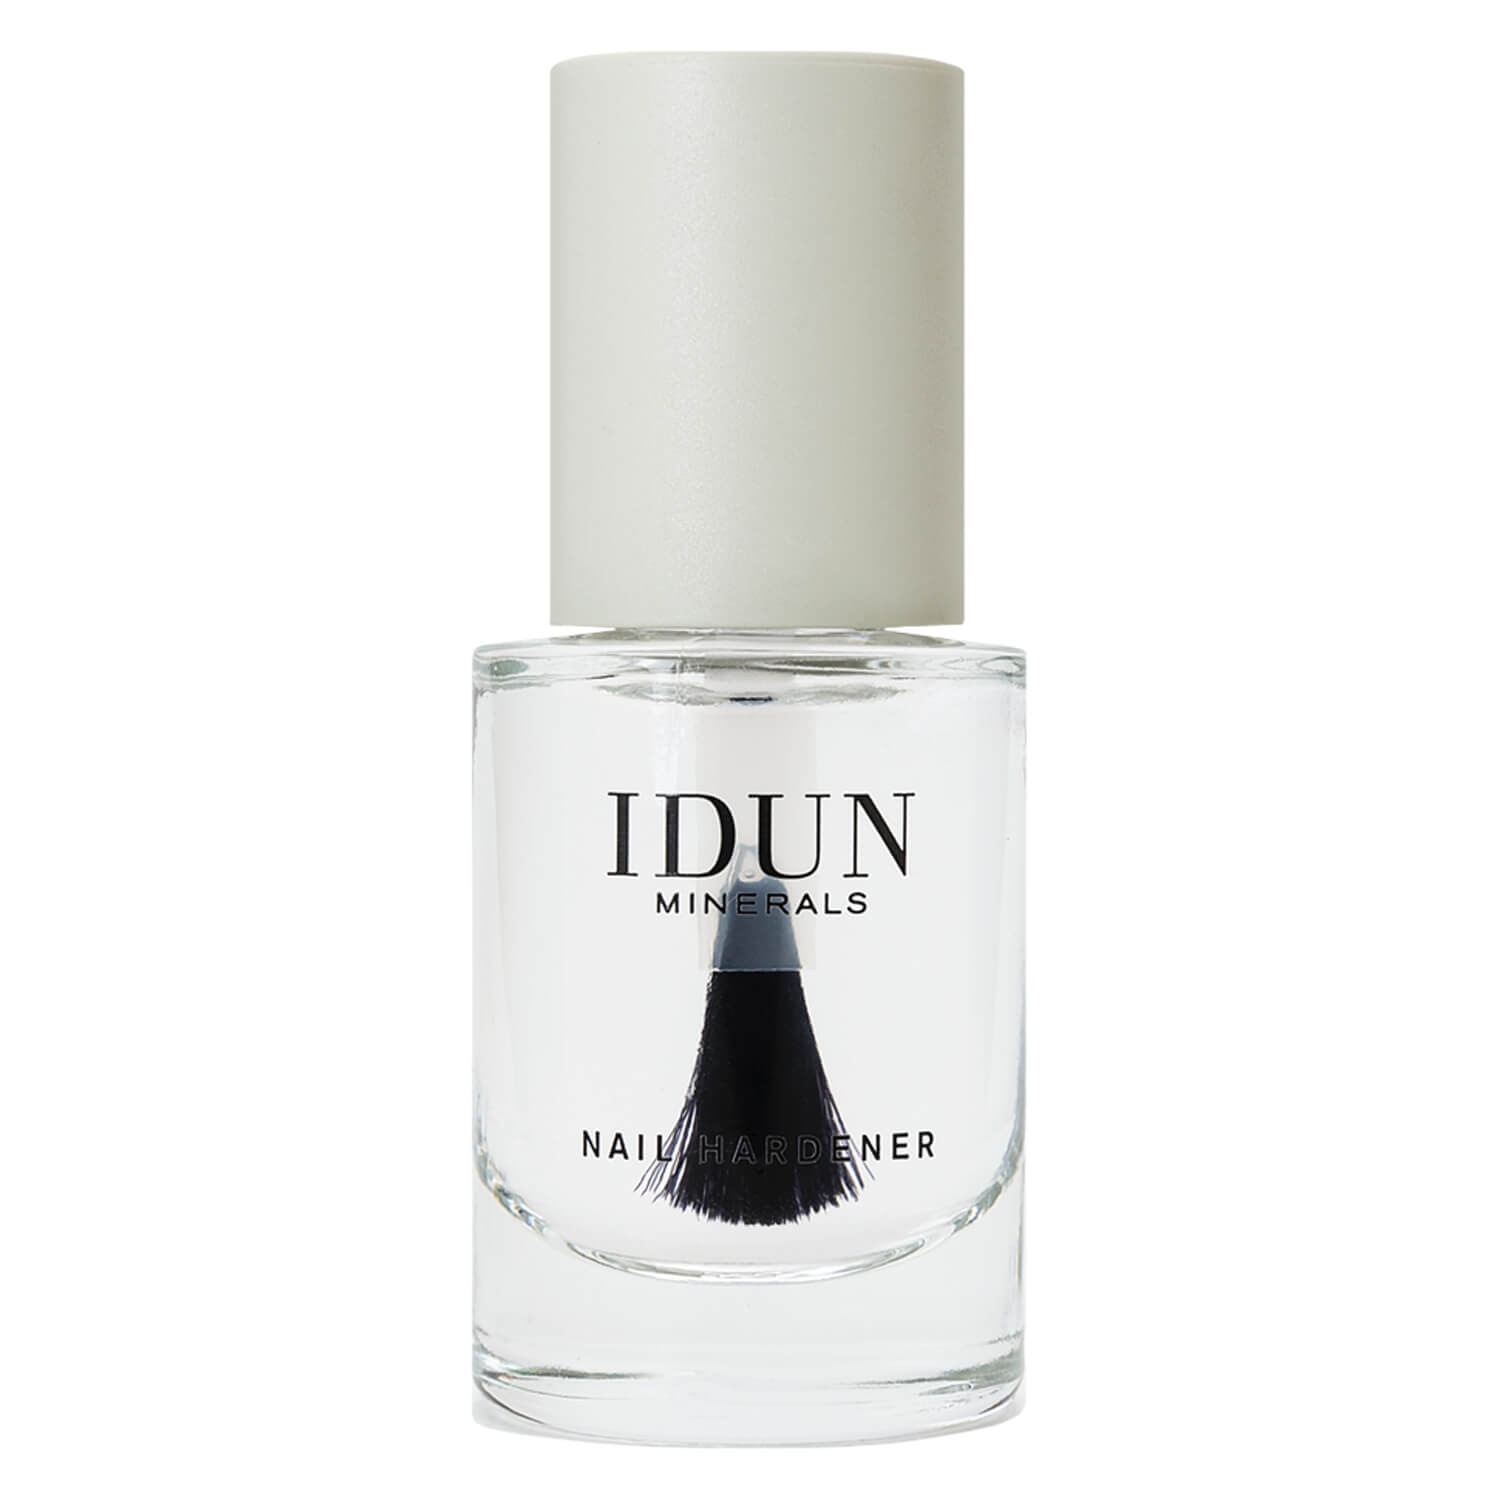 Produktbild von IDUN Nails - Nail Hardener